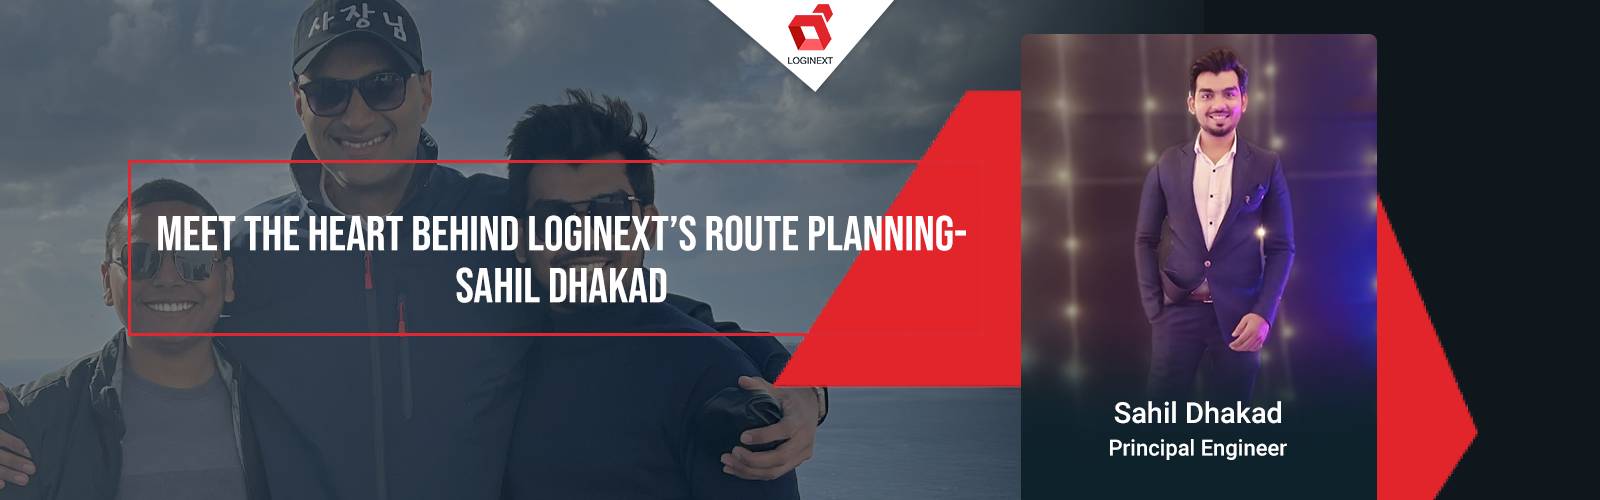 Rencontrez le cœur derrière la planification d'itinéraire de LogiNext - Sahil Dhakad sur WeAreLogiNext